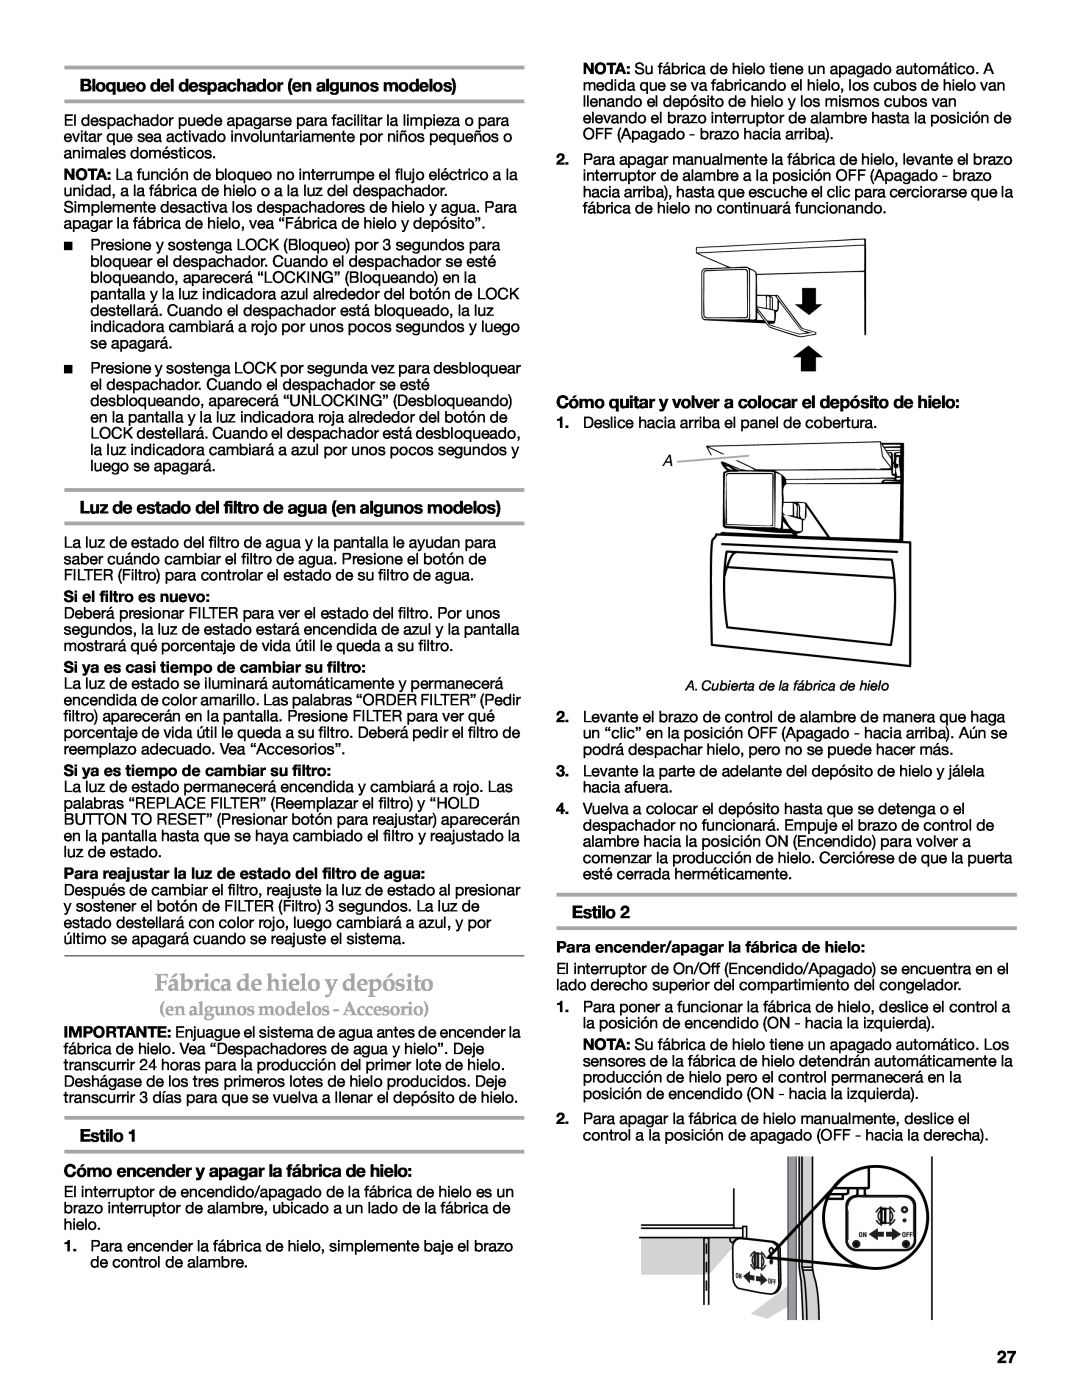 KitchenAid W10303989A, KSSC48QVS manual Fábrica de hielo y depósito, en algunos modelos - Accesorio, Estilo 